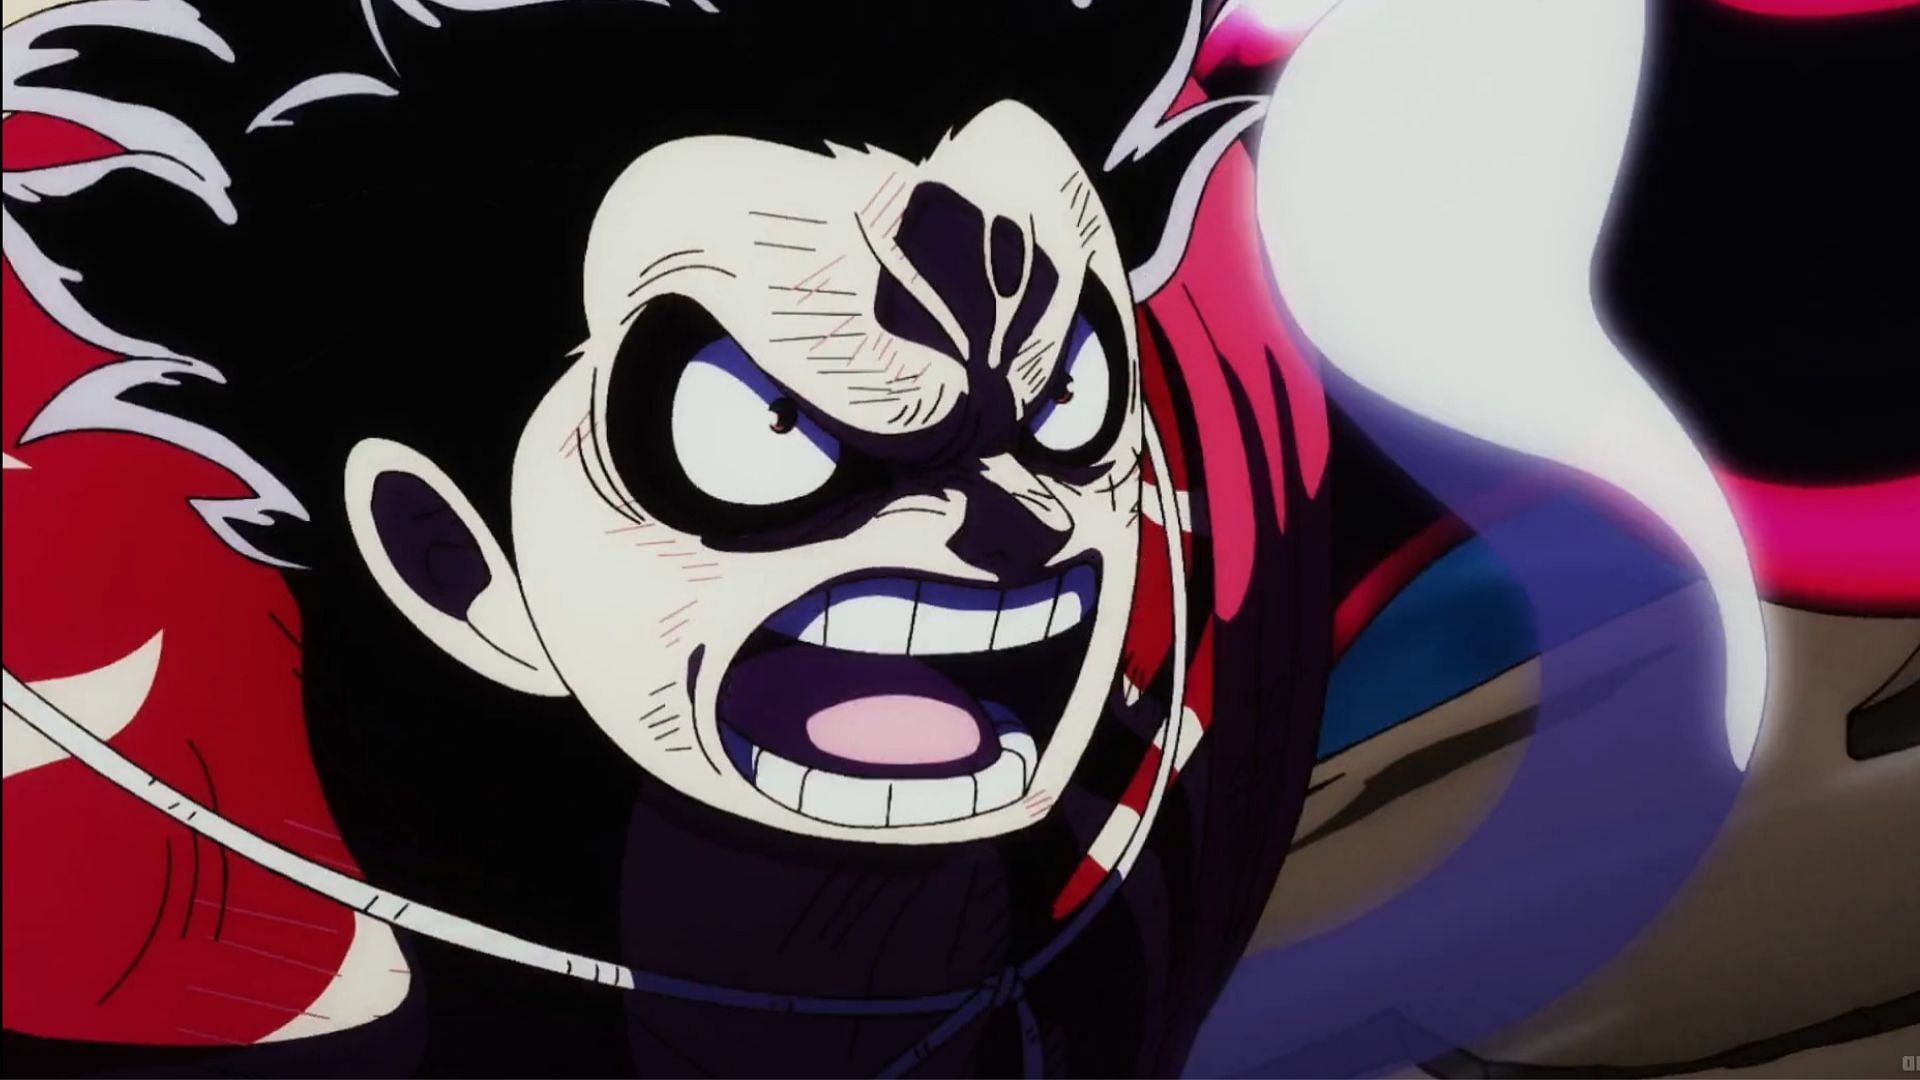 Gear 4 Luffy as seen in One Piece episode 1069 (Image via Toei)